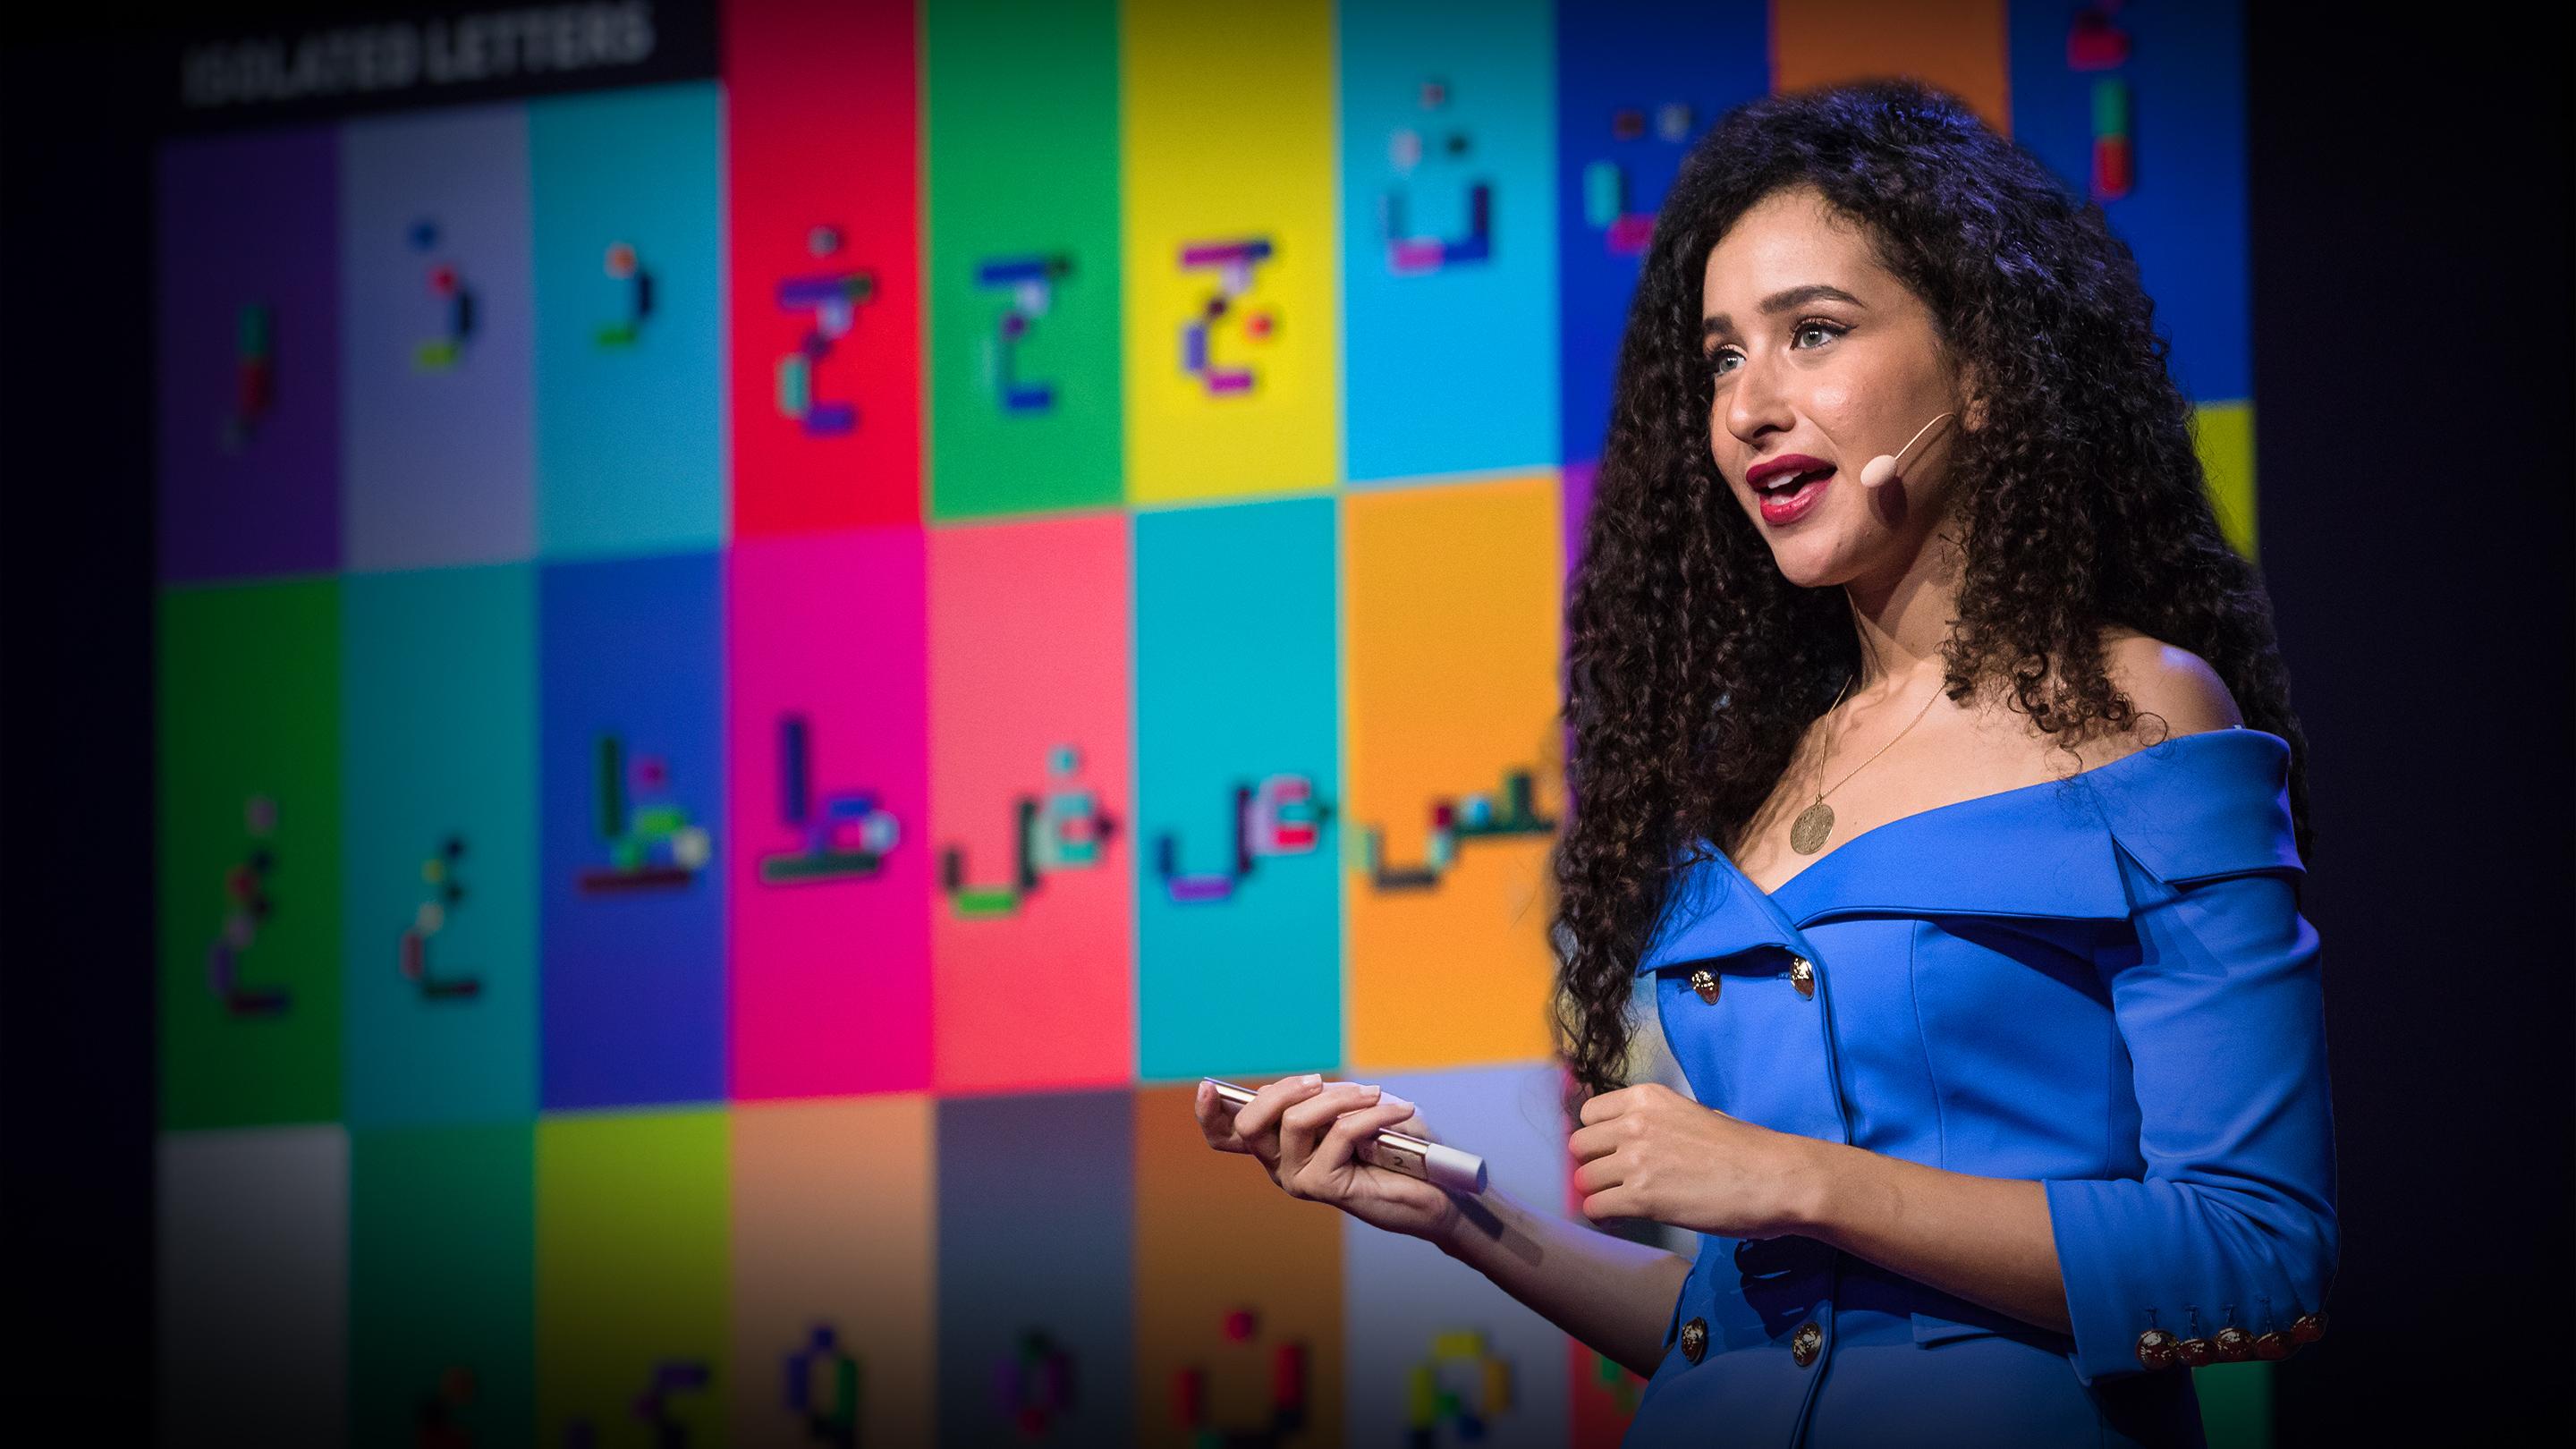 Wie ich LEGO nutze, um Arabisch zu lehren | Ghada Wali